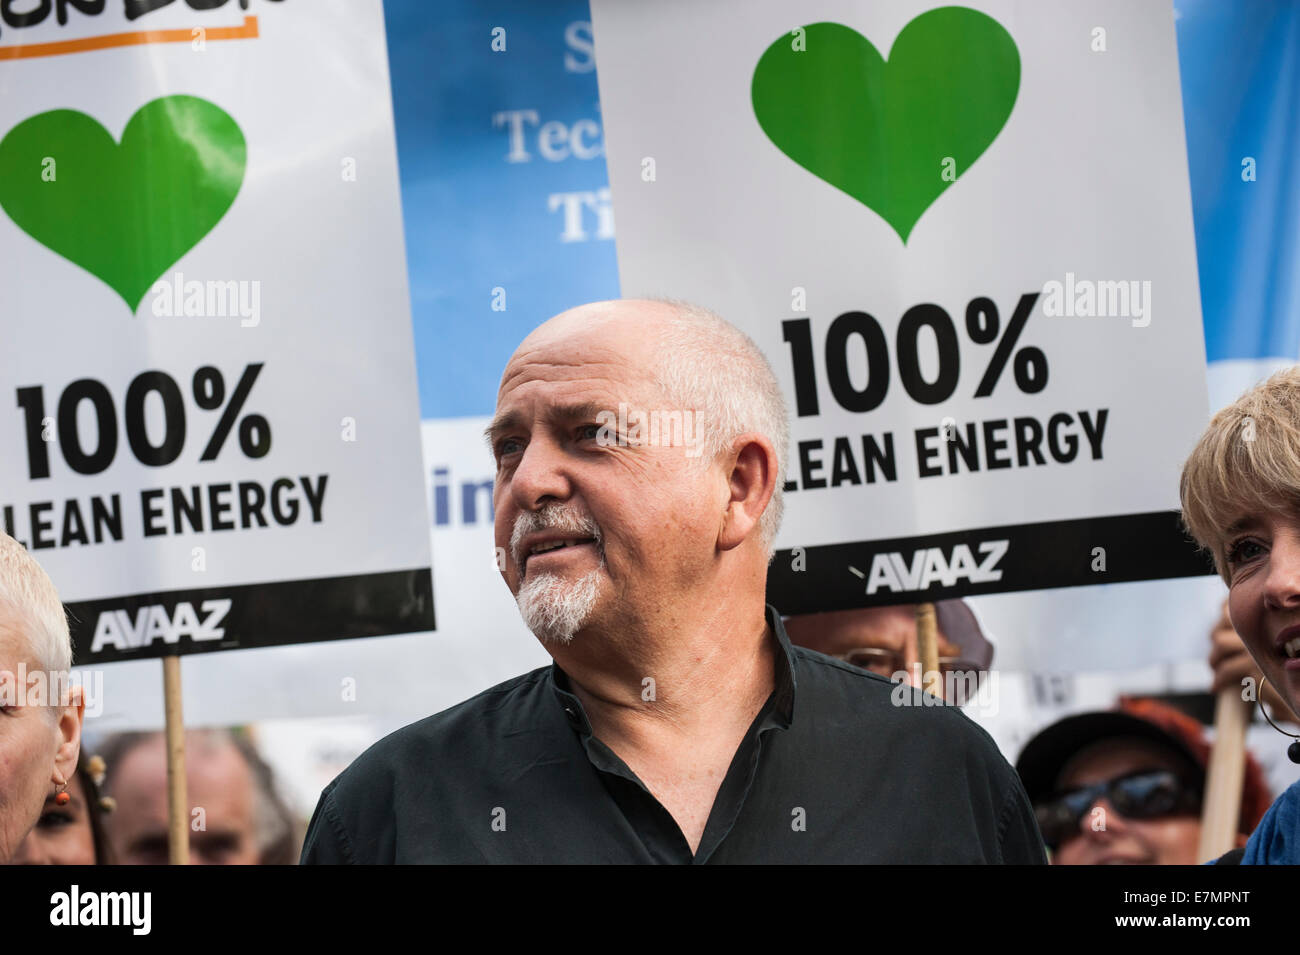 Londres, Reino Unido. 21 Sep, 2014. El músico Peter Gabriel marchas con los manifestantes en la manifestación del cambio climático, Londres, 21 de septiembre de 2014. Crédito: Sue Cunningham Photographic/Alamy Live News Foto de stock